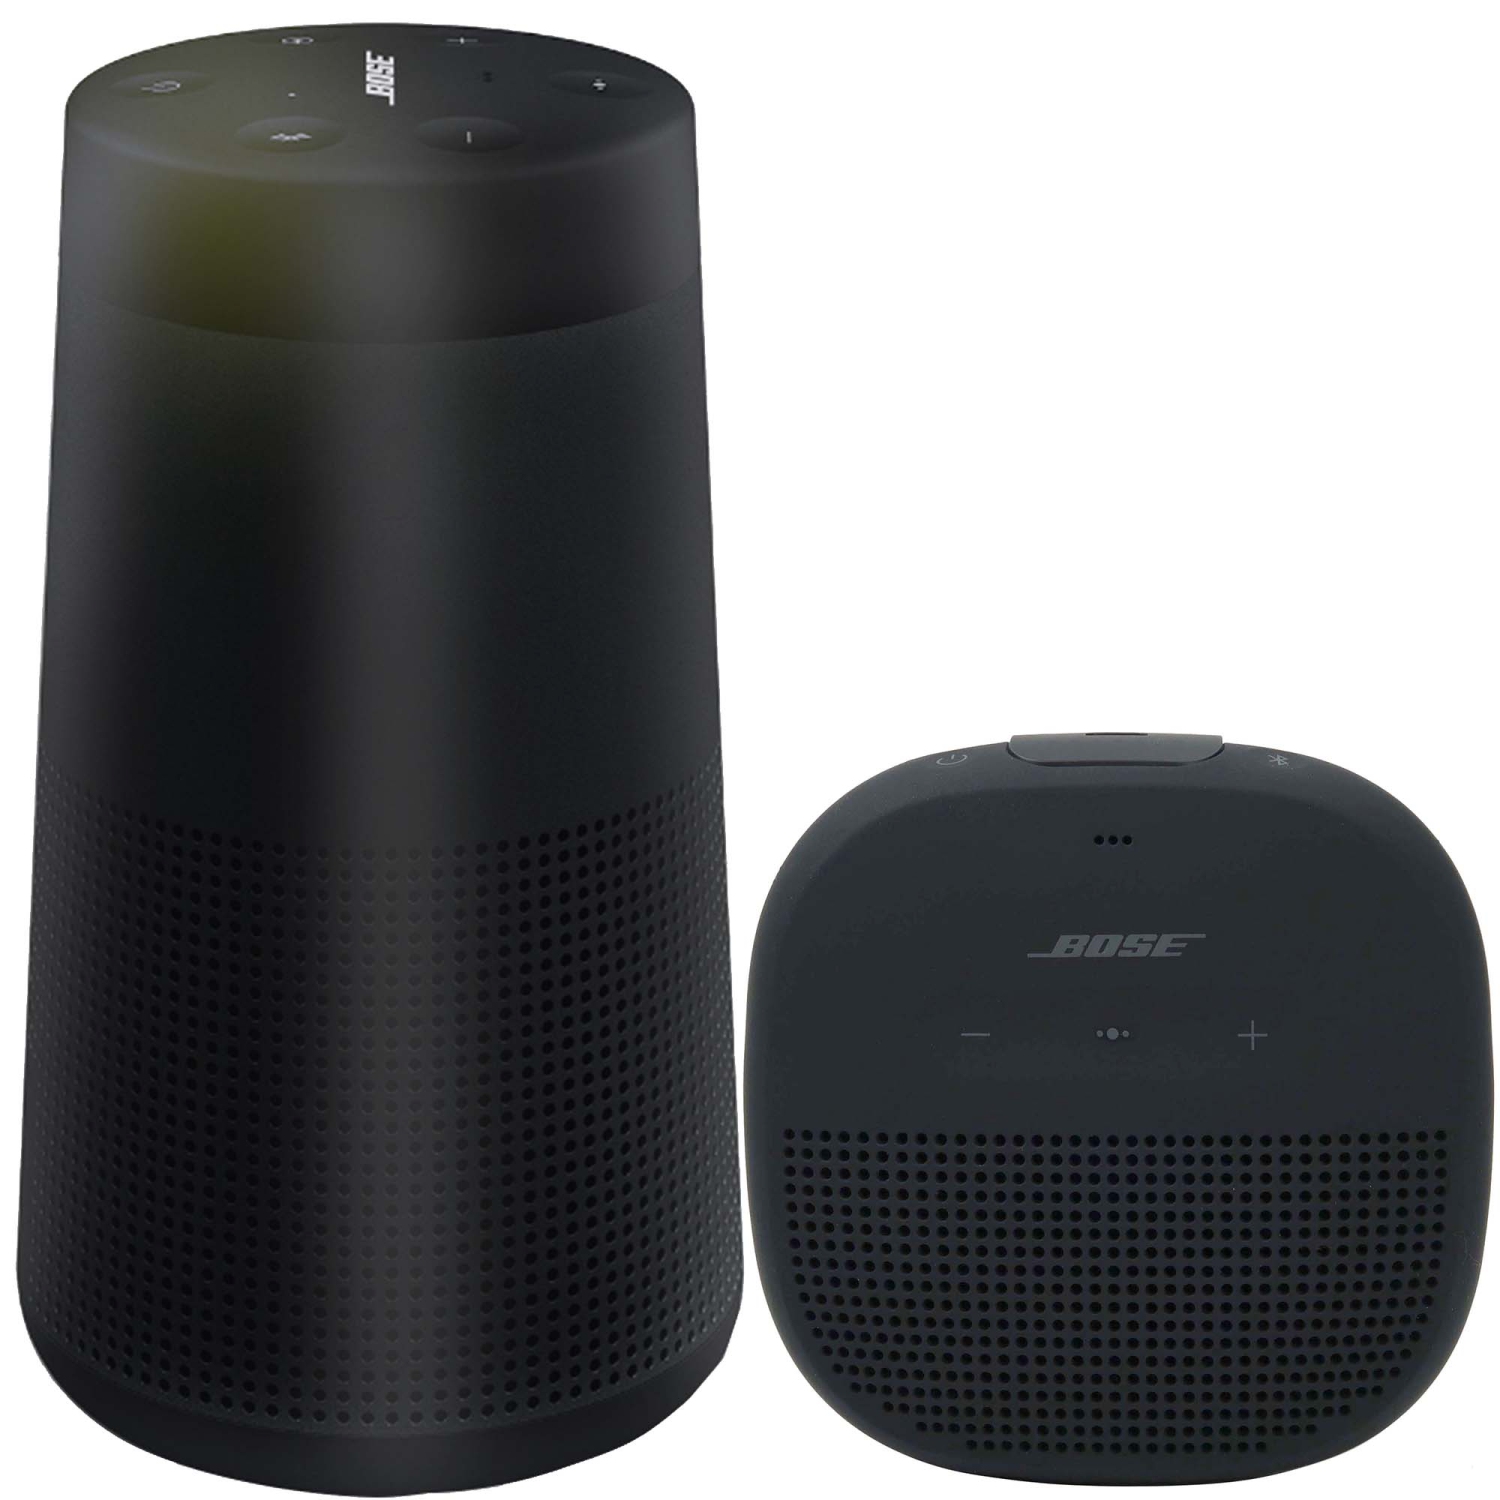 Bose SoundLink Revolve Bluetooth Speaker and Bose Soundlink Micro Speaker Black